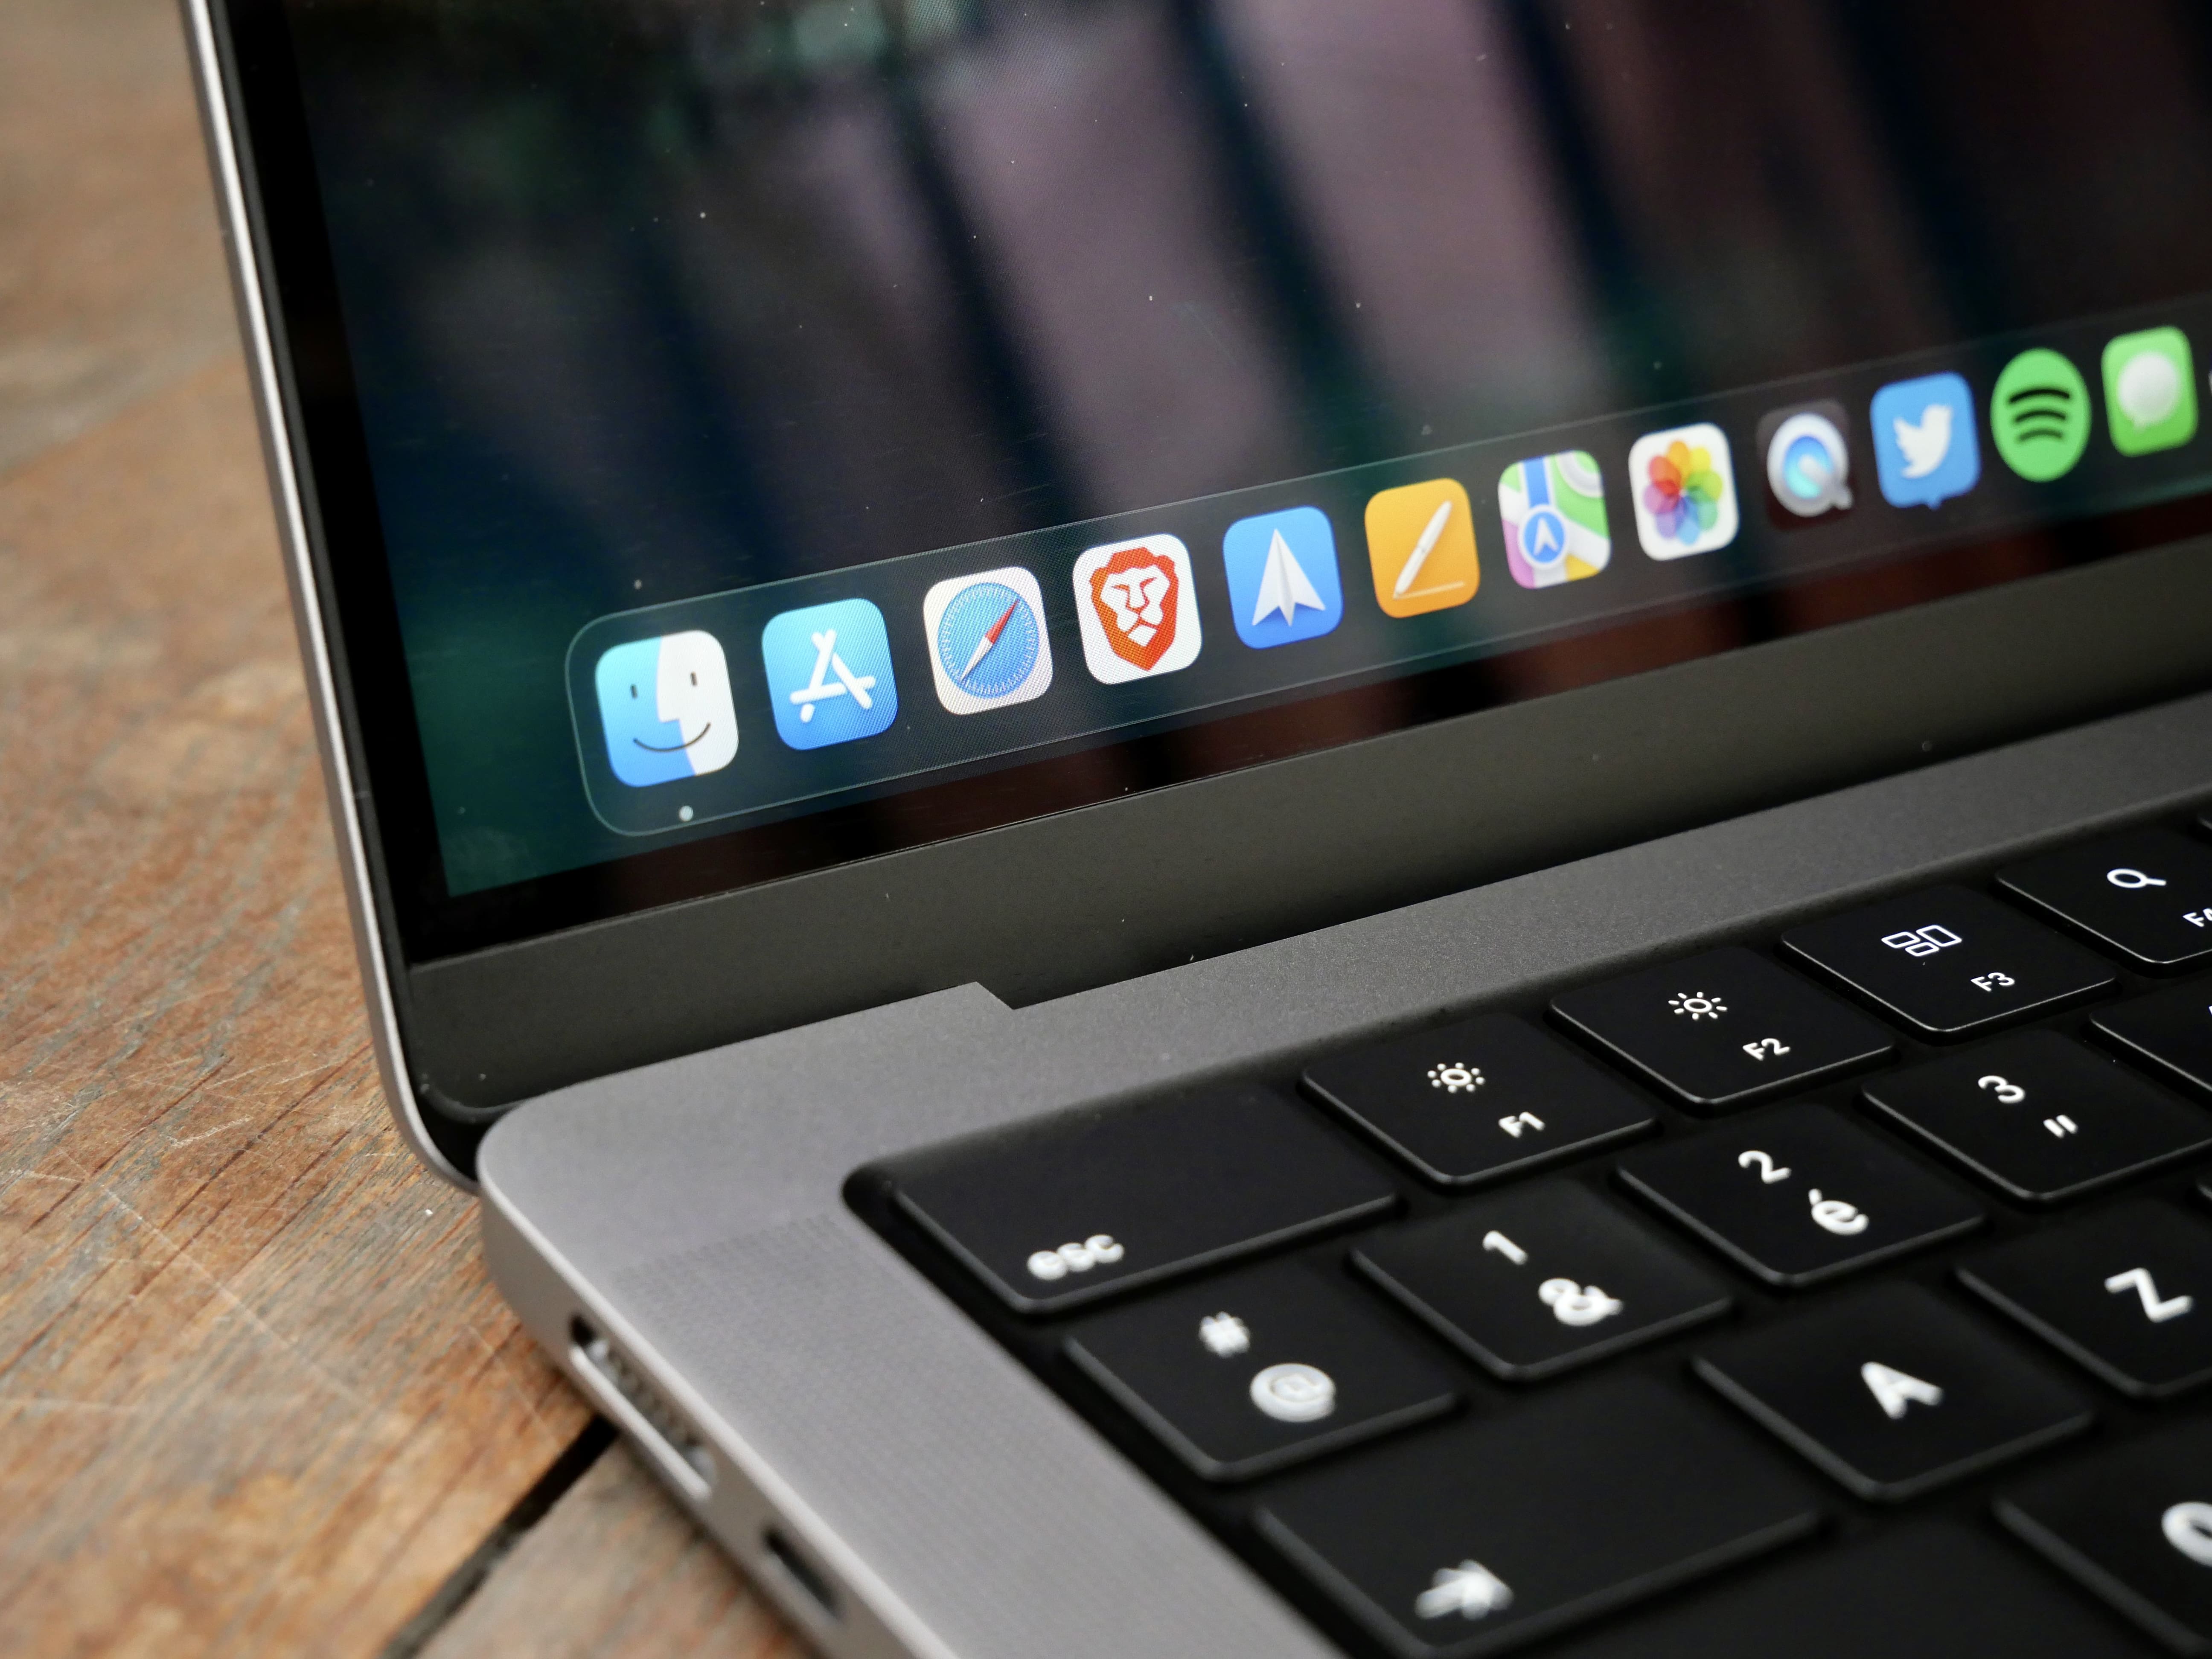 MacBook Pro 2021 : le Wi-Fi est nul, mais l'autonomie déchire